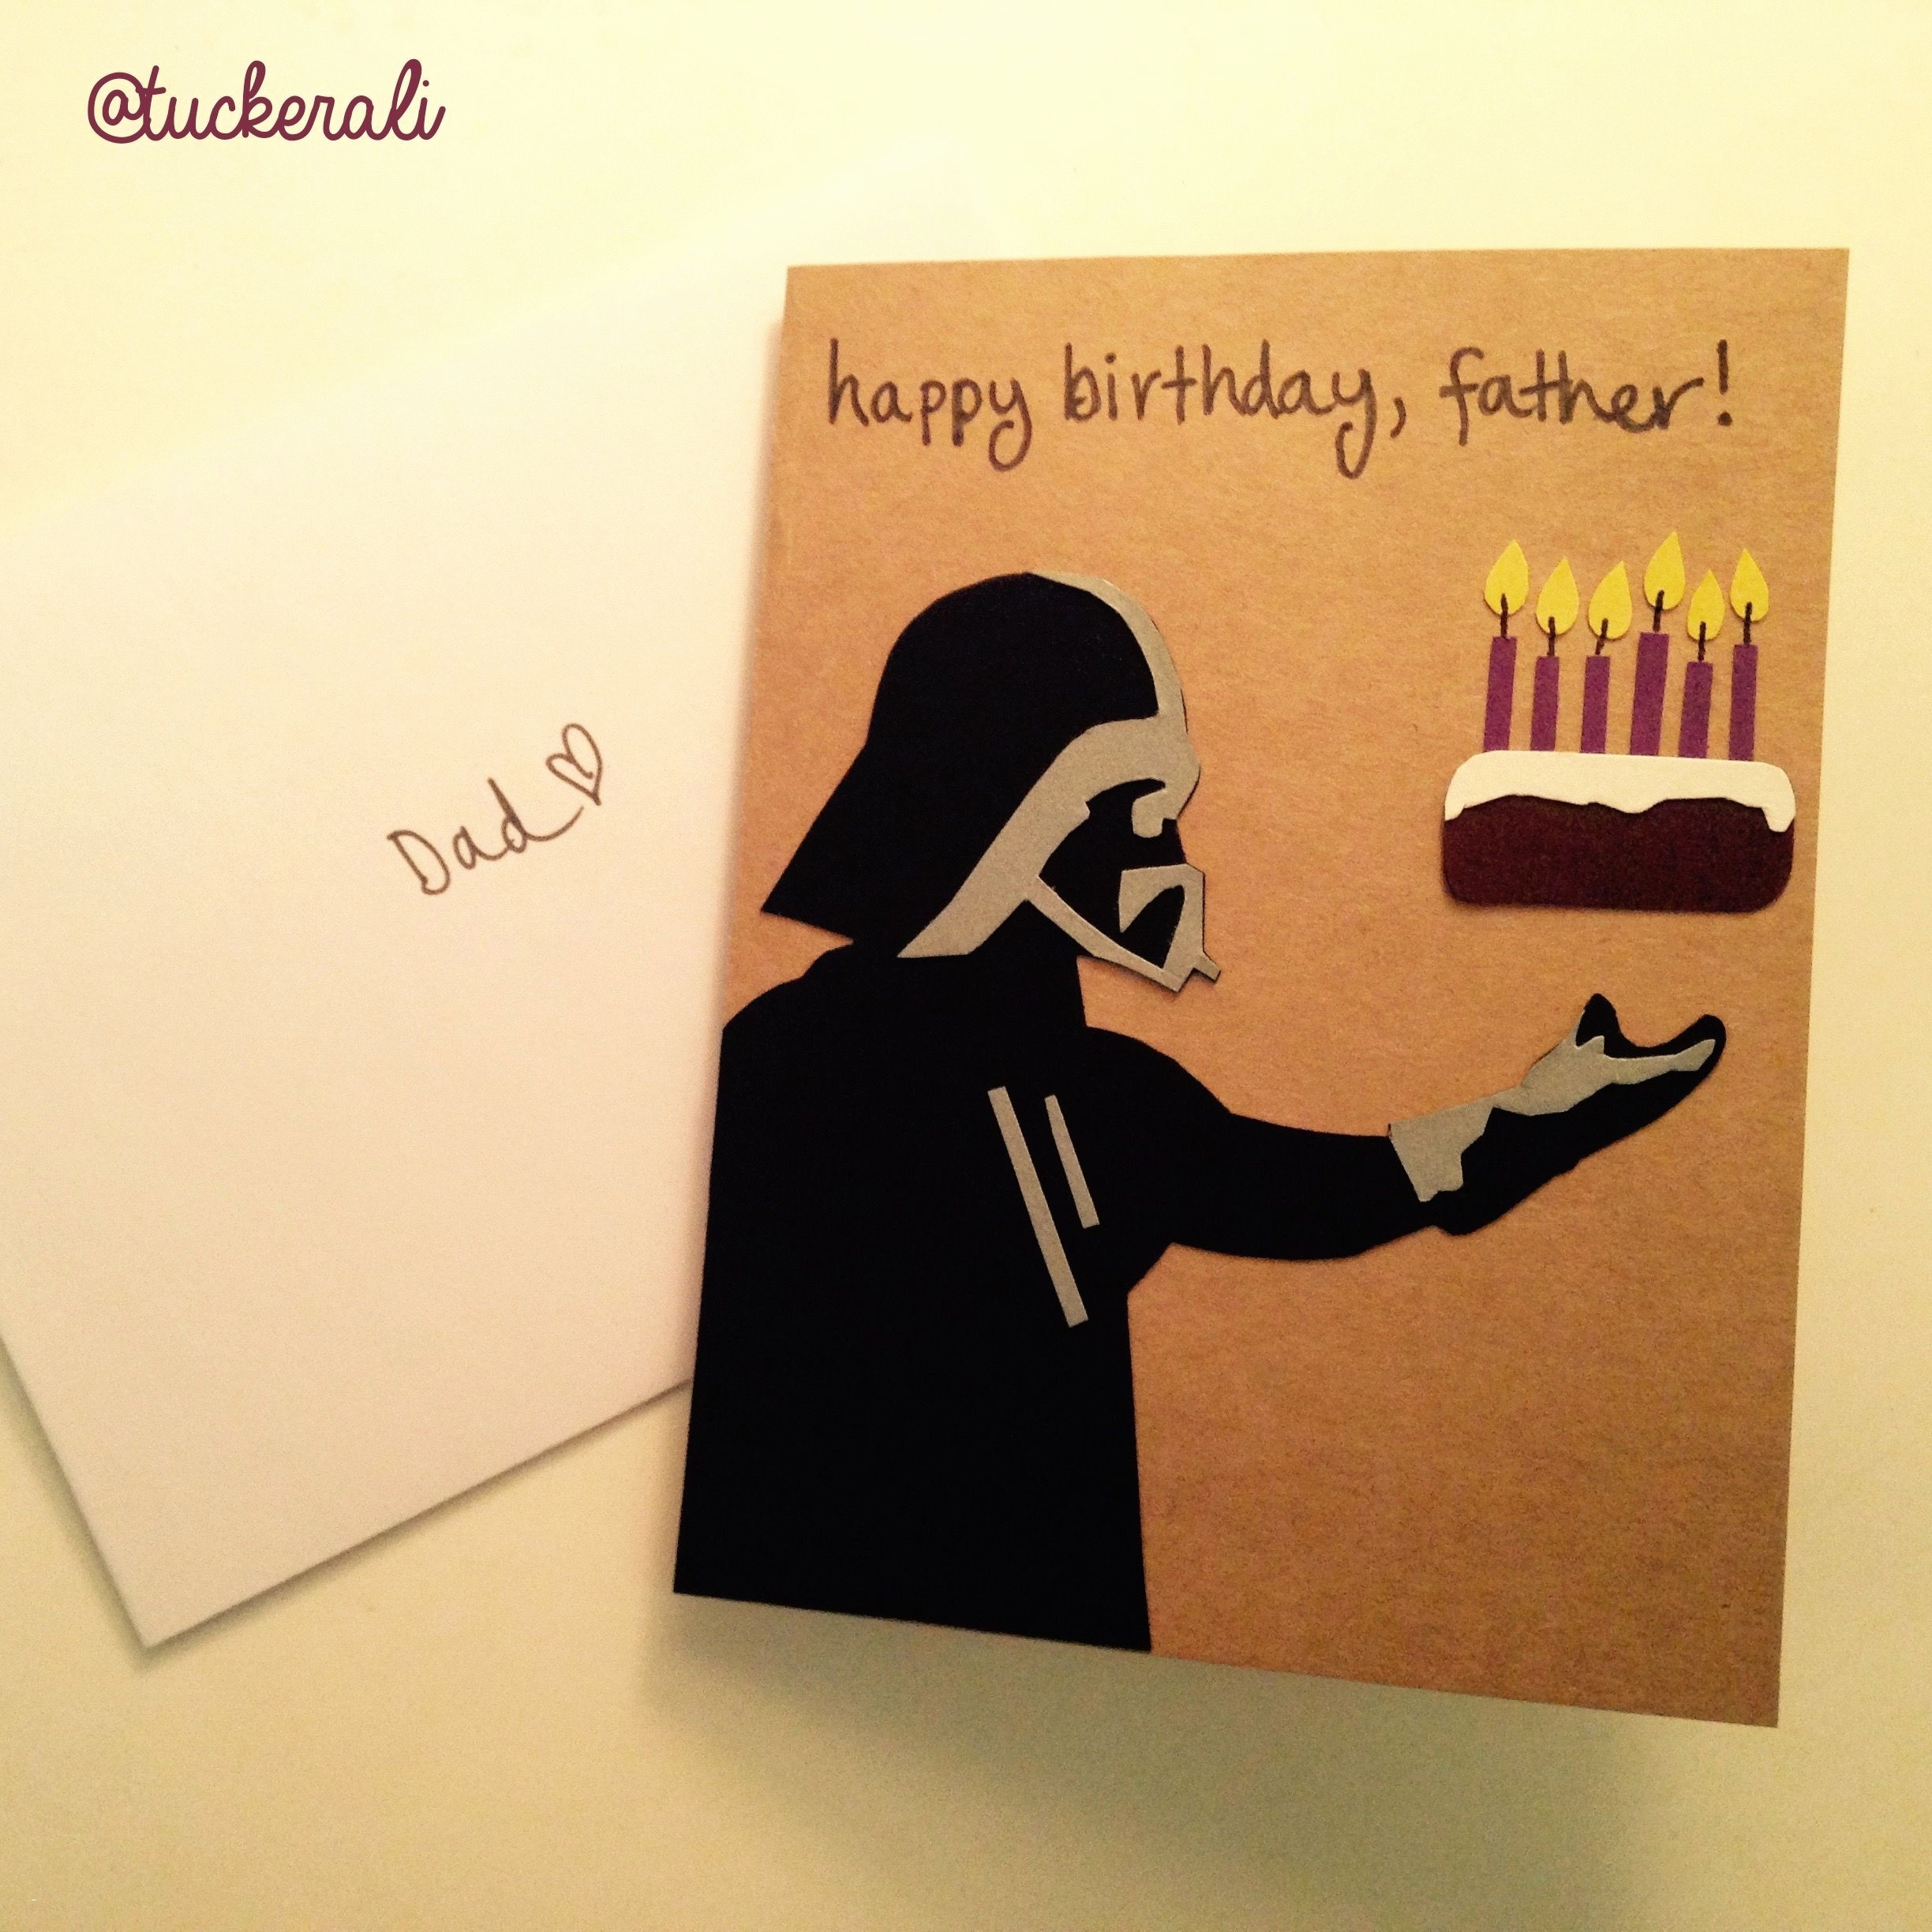 Friend Birthday Card Ideas Happy Birthday Card Ideas For A Friend Awesome Birthday Card Ideas